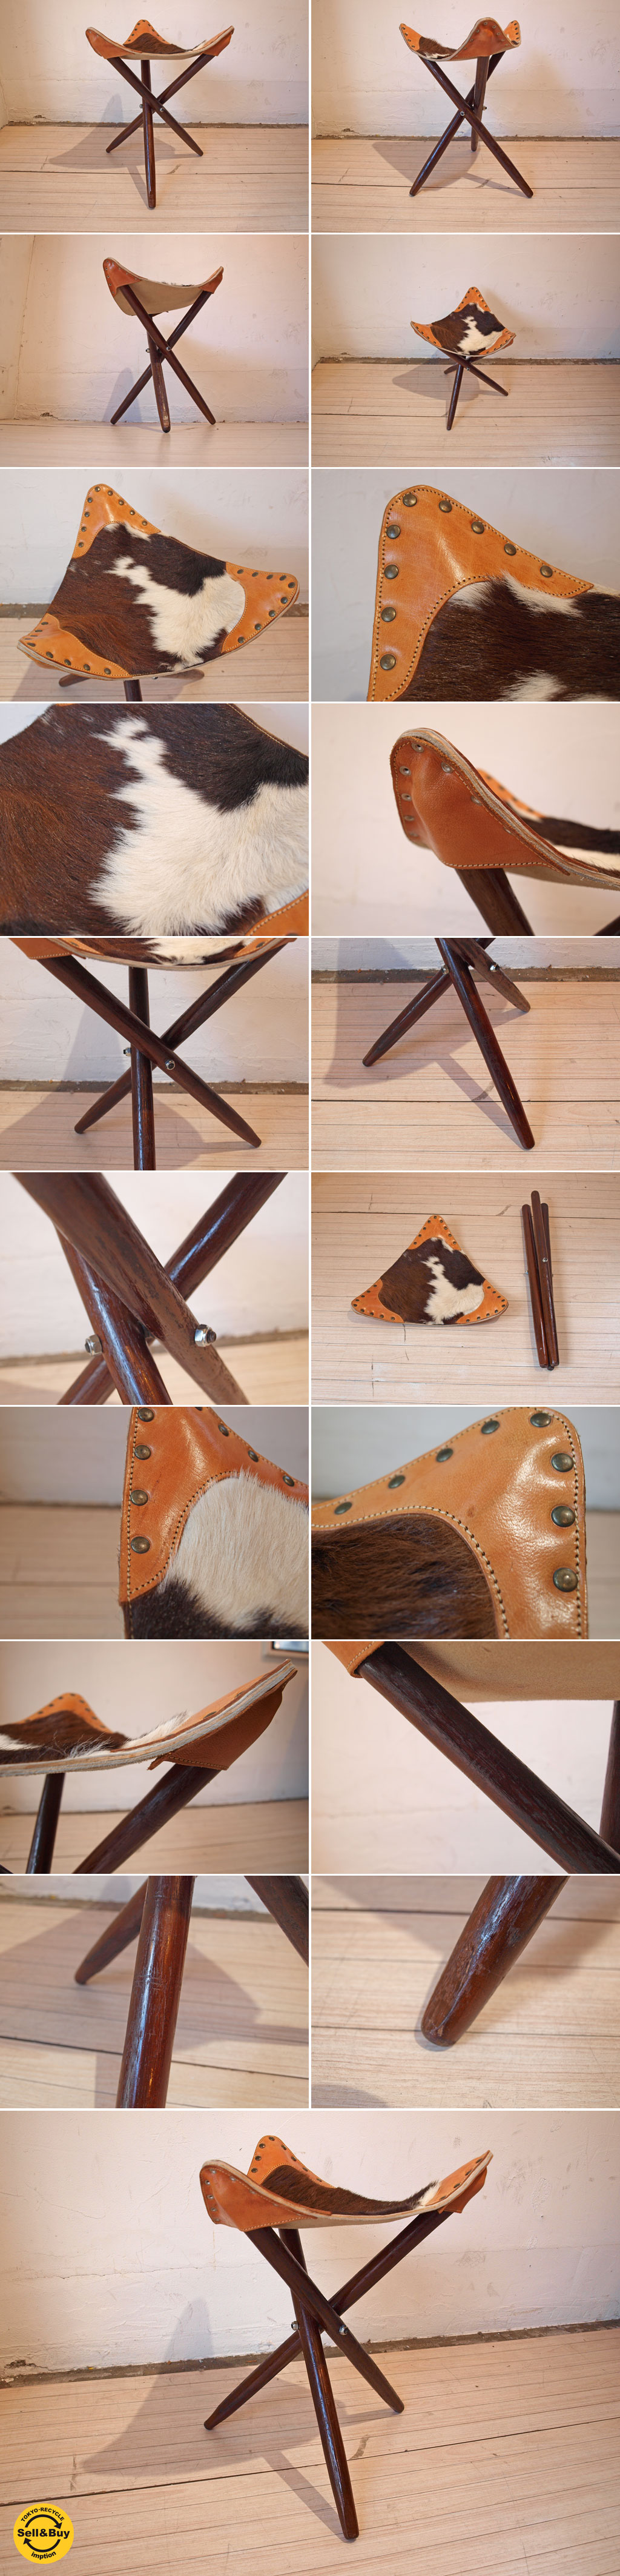 ハンティングチェア Hunting chair スツール 木製 三本脚 ハラコ